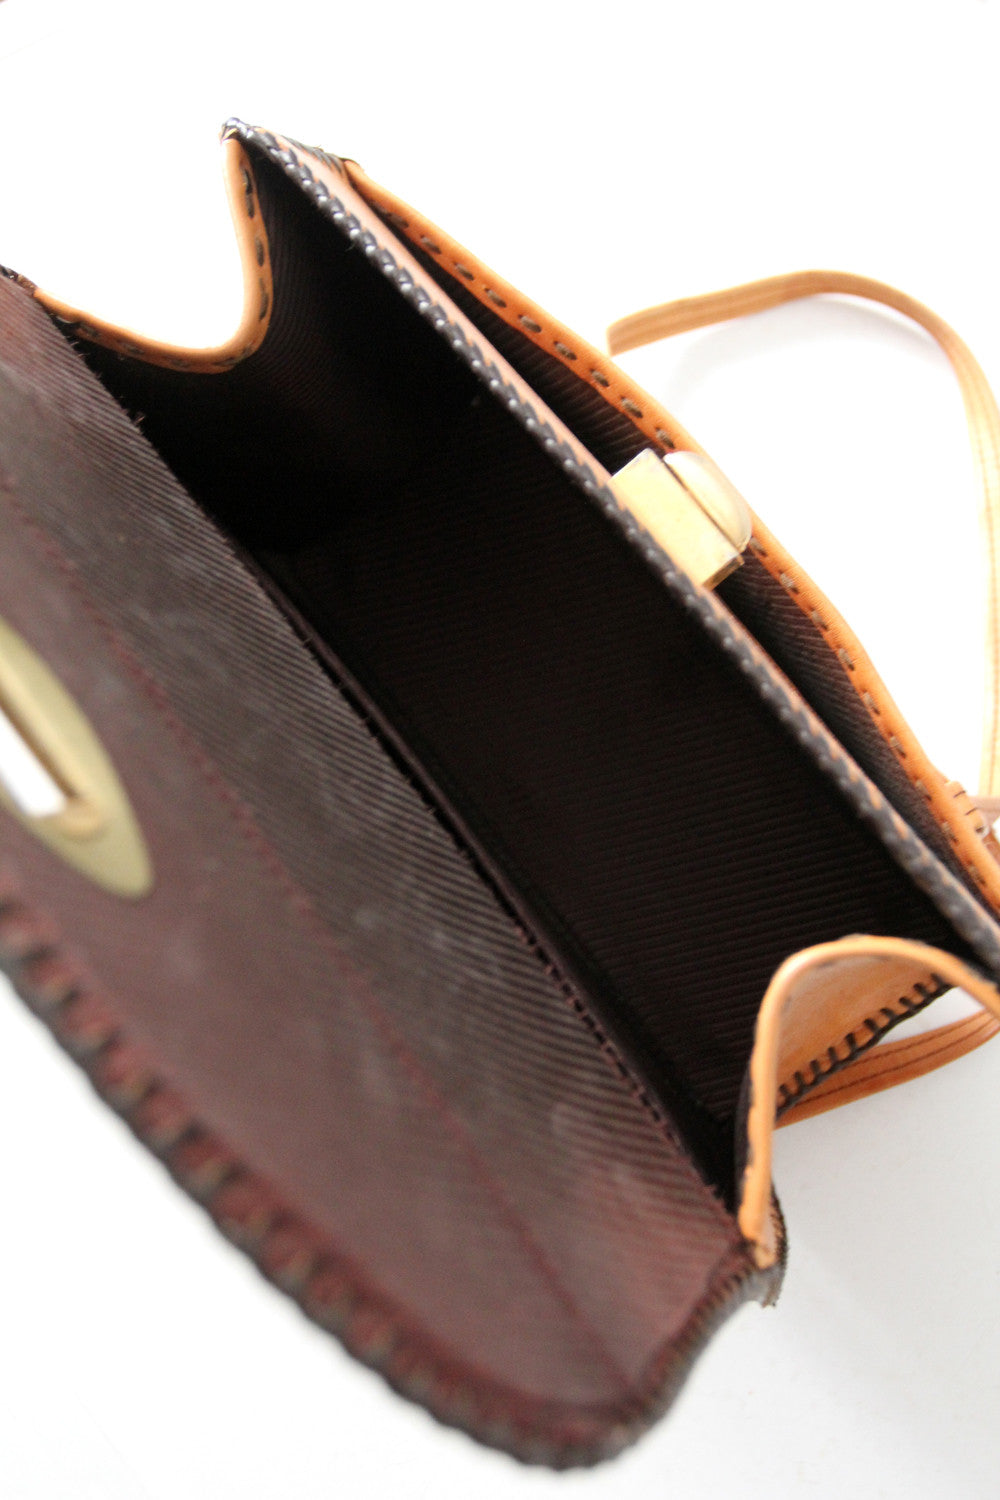 vintage tooled leather purse